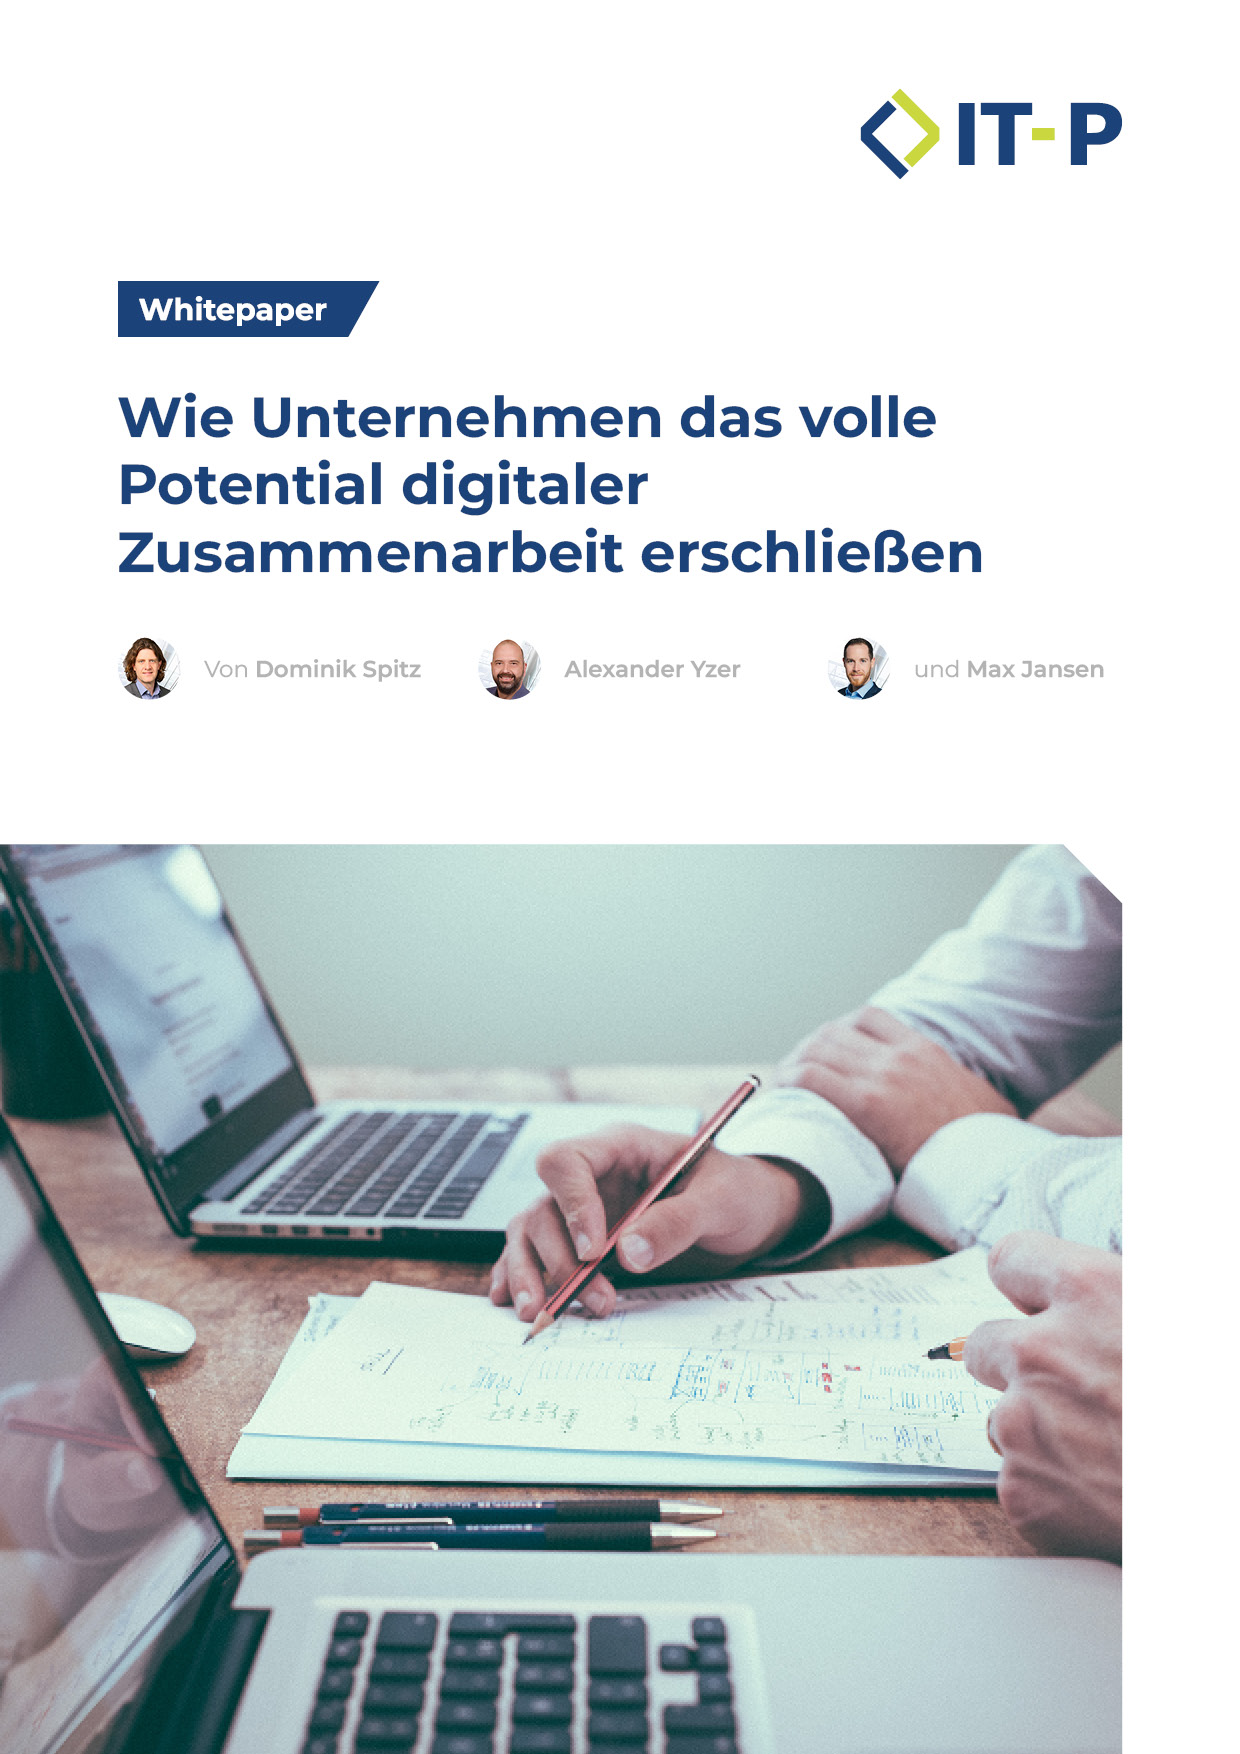 Whitepaper: Wie Unternehmen das volle Potential
digitaler Zusammenarbeit erschließen